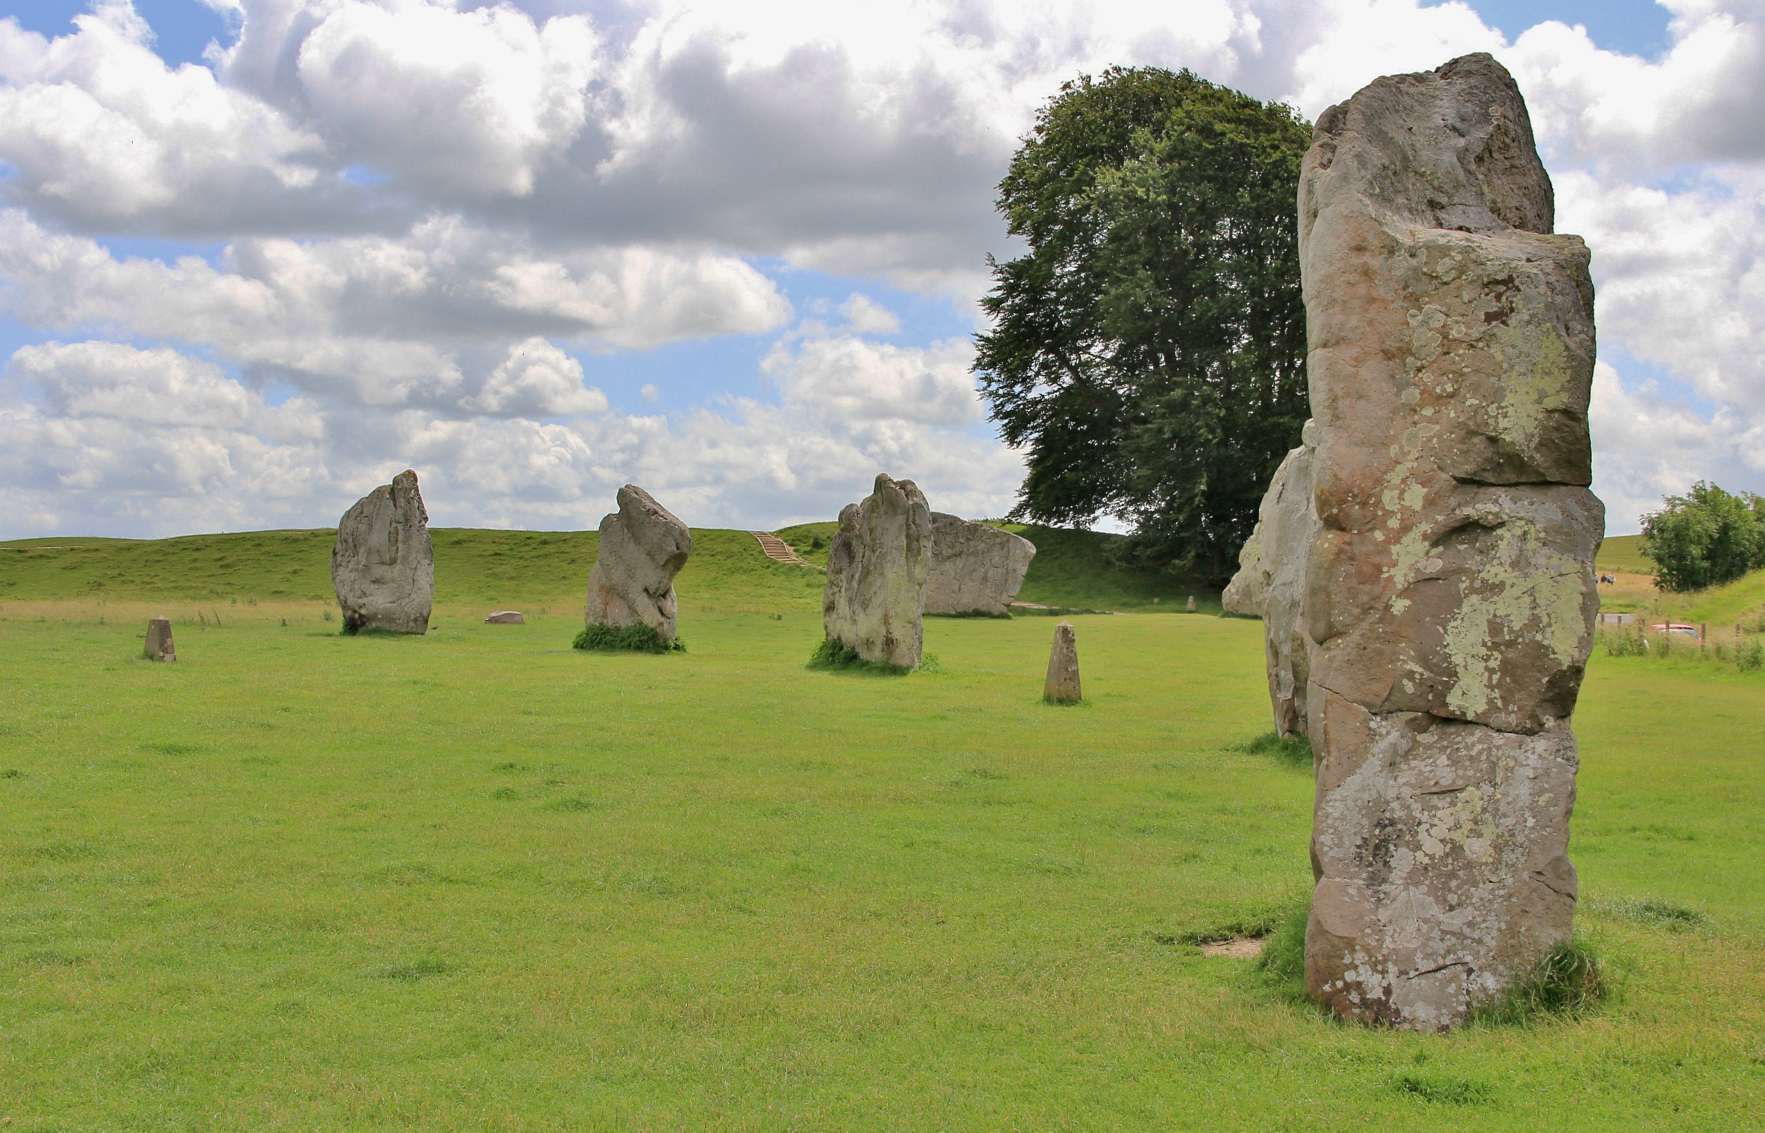 Lingkaran batu lega 330m (1,082ft) lega Avebury diwangun antara sakitar 2850 SM sareng 2200 SM. Ngandung tilu bunderan batu sareng ngaregepkeun 100 batu nangtung anu aslina asalna, éta parantos janten topik minat arkéologis ti saprak abad ka-17.